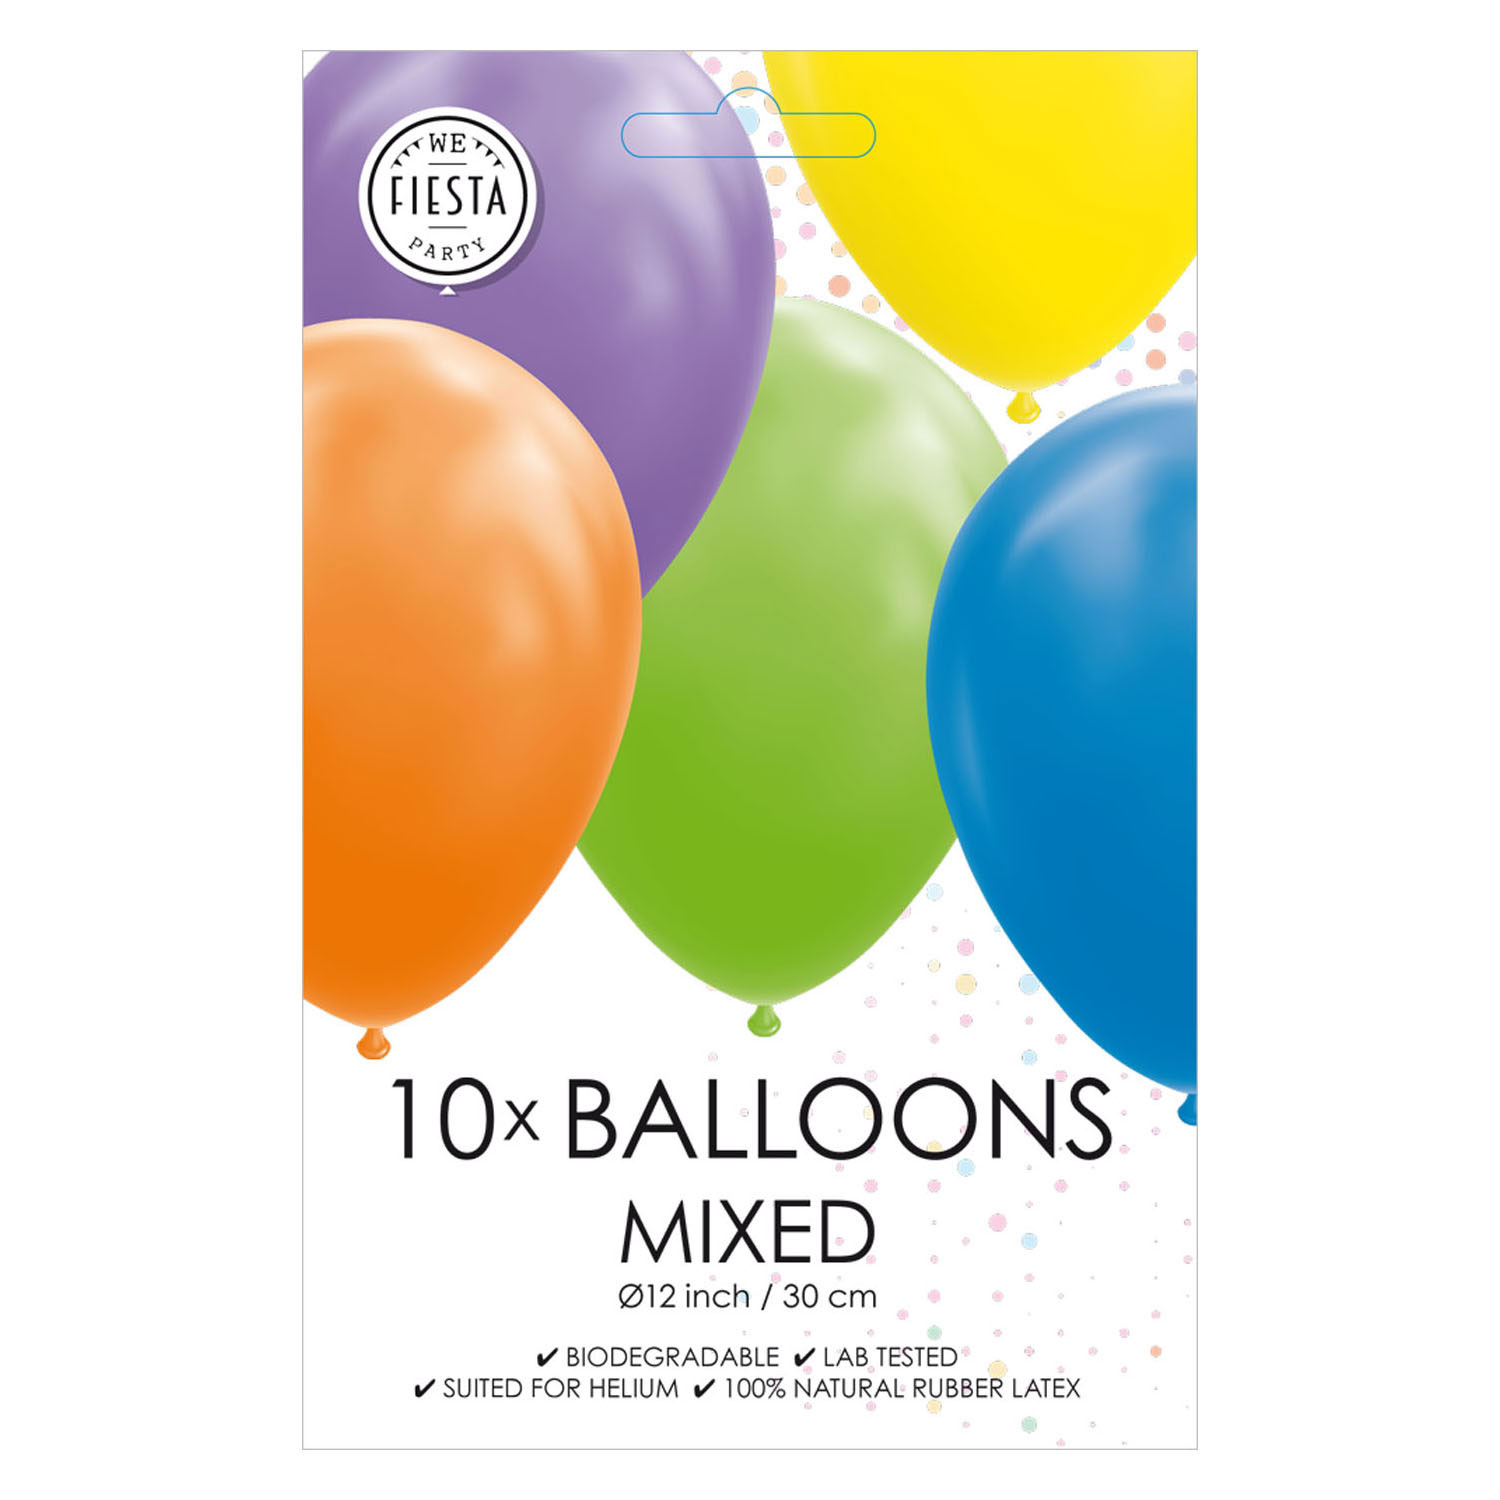 Luftballons in verschiedenen Farben, 30 cm, 10 Stück.